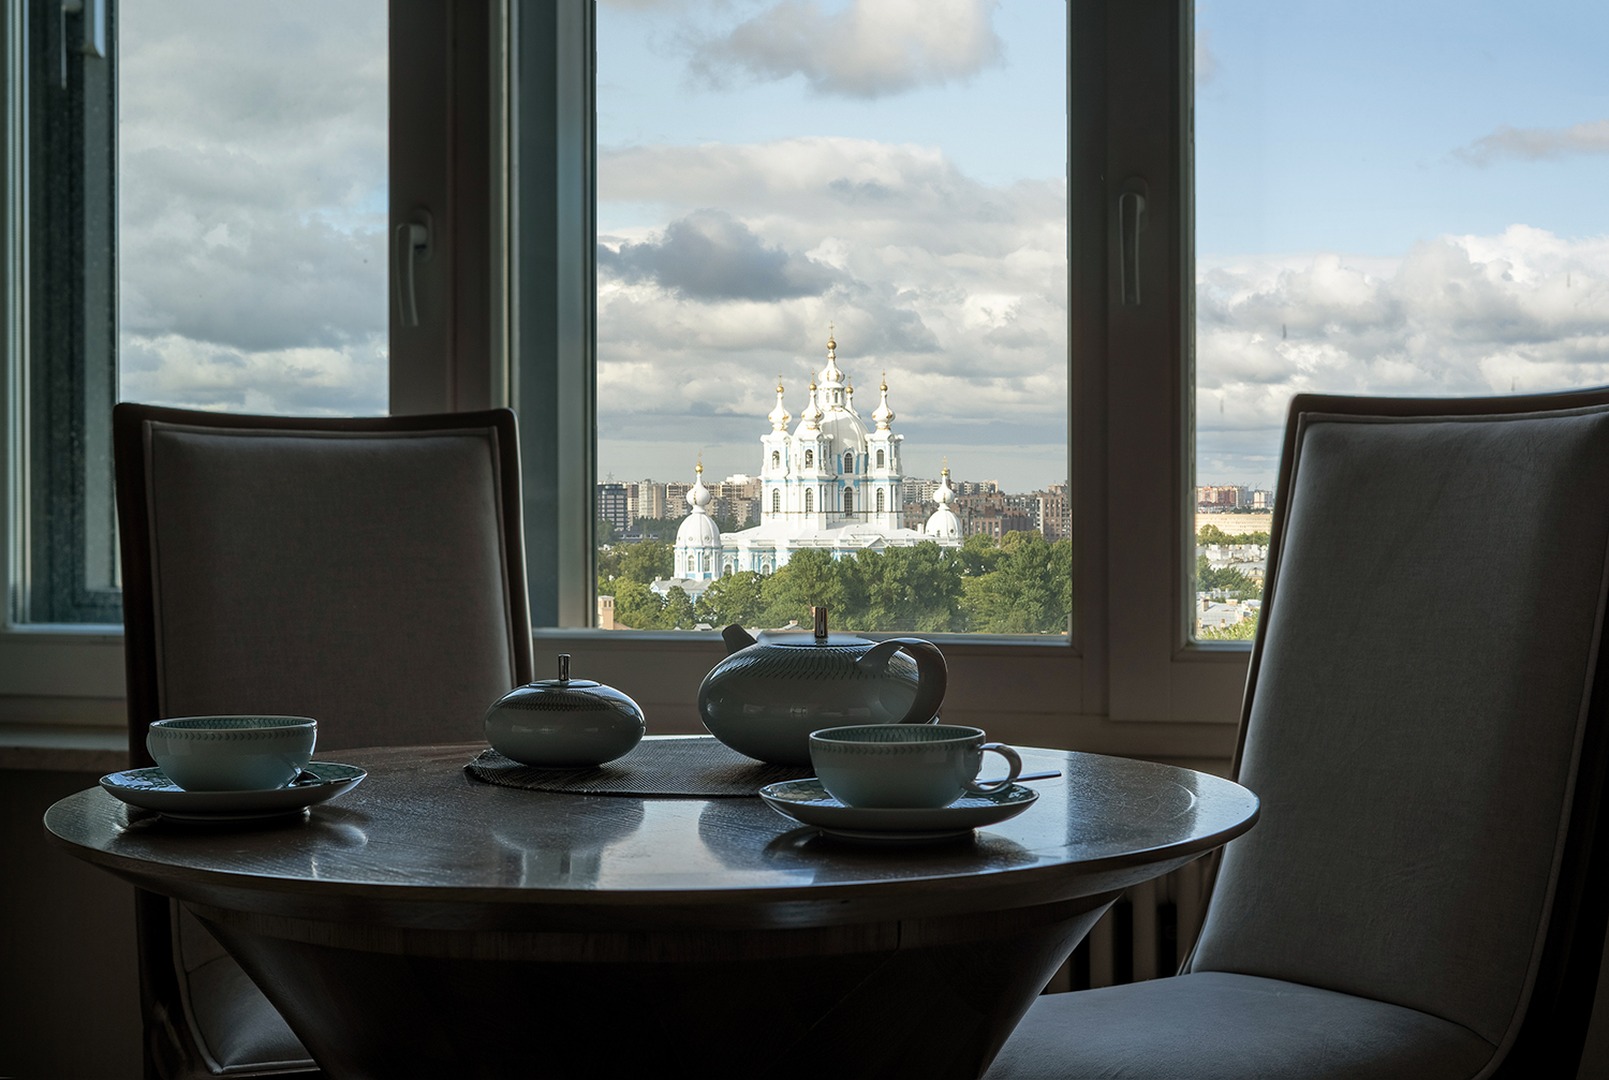 «Резиденция на Суворовском» – пентхаус в стиле неоклассика с видом на Смольный, pic-1